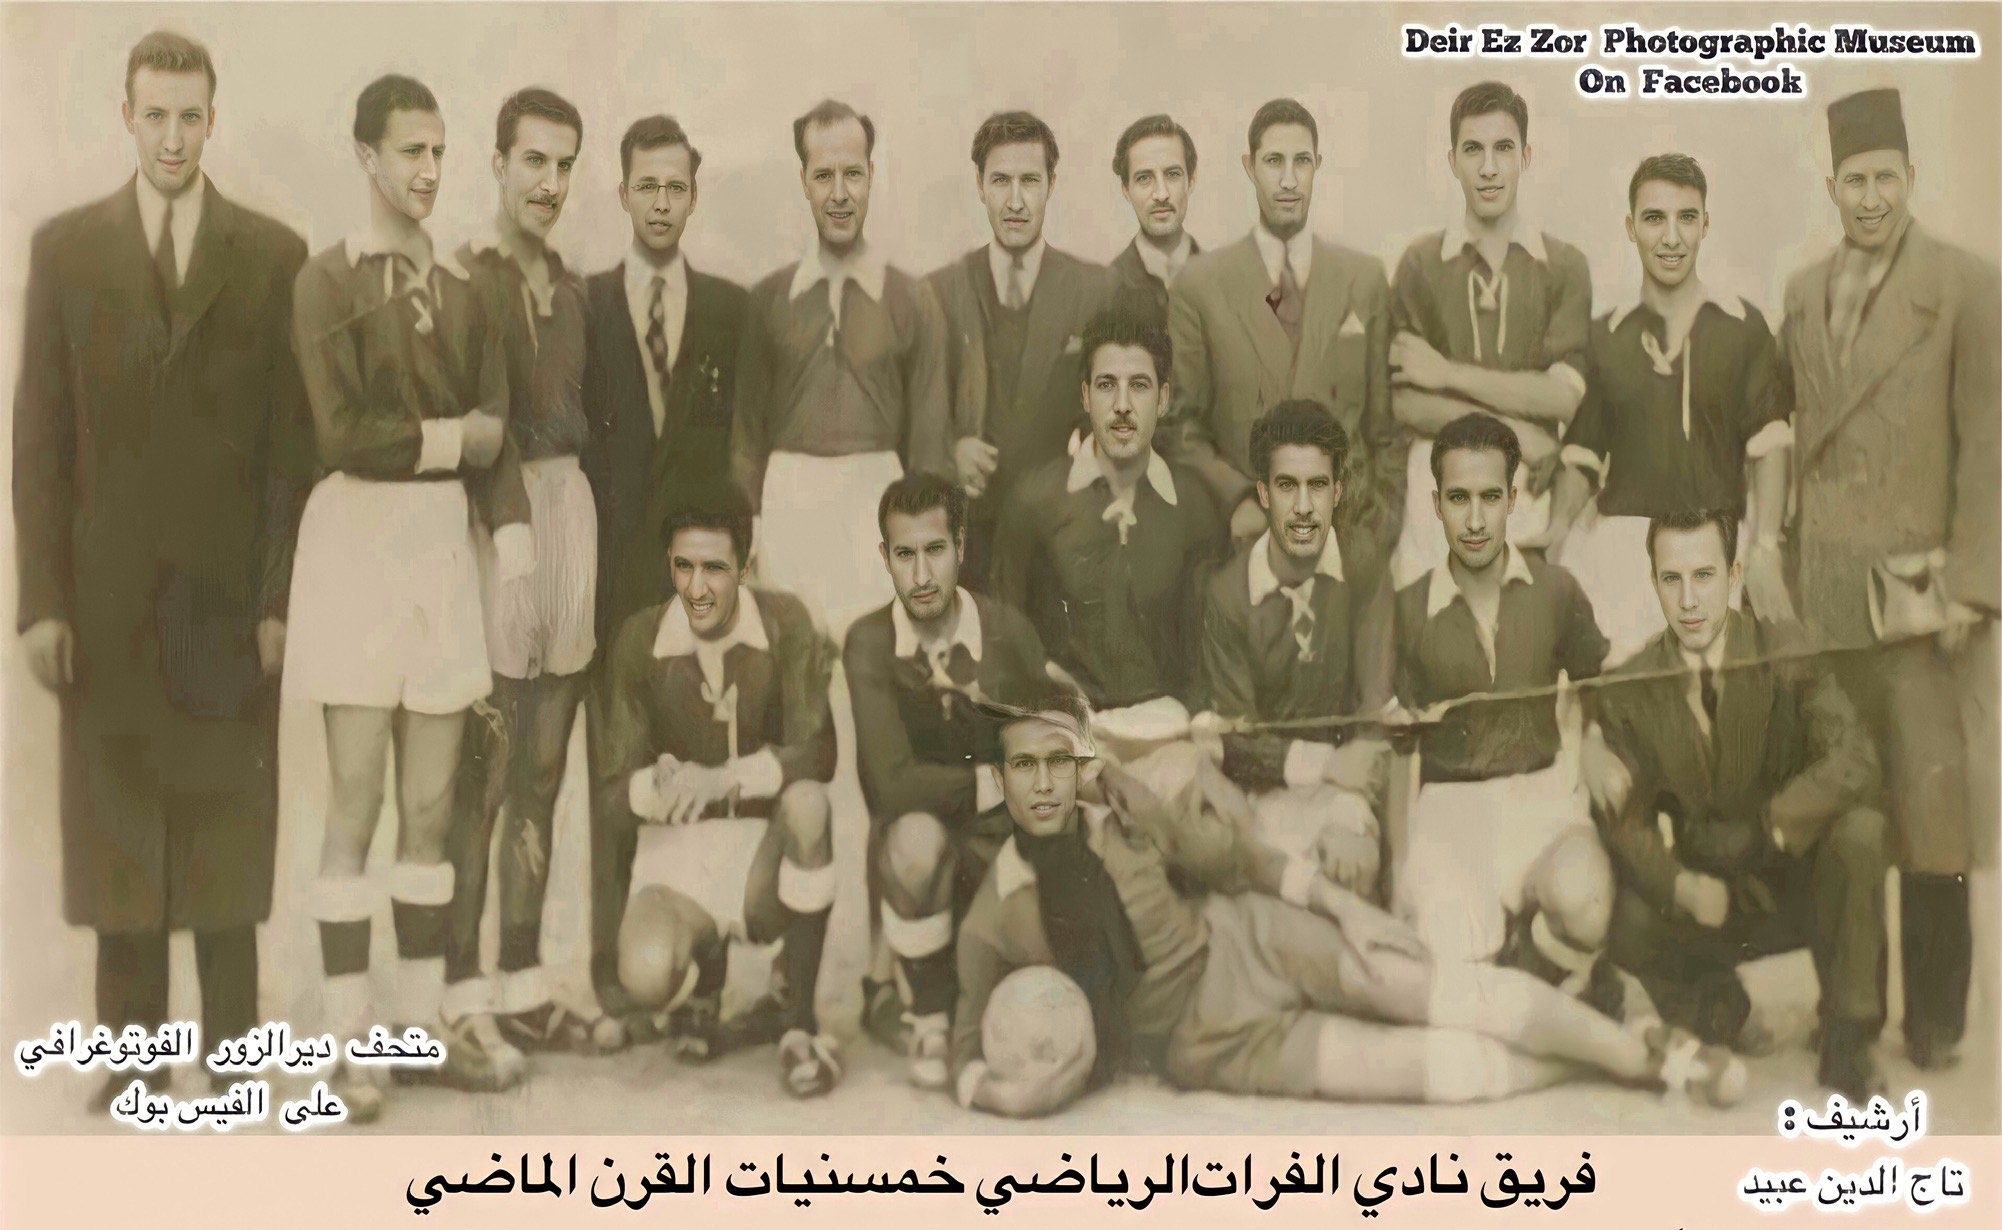 التاريخ السوري المعاصر - فريق نادي الفرات الرياضي في دير الزور في خمسينيات القرن العشرين